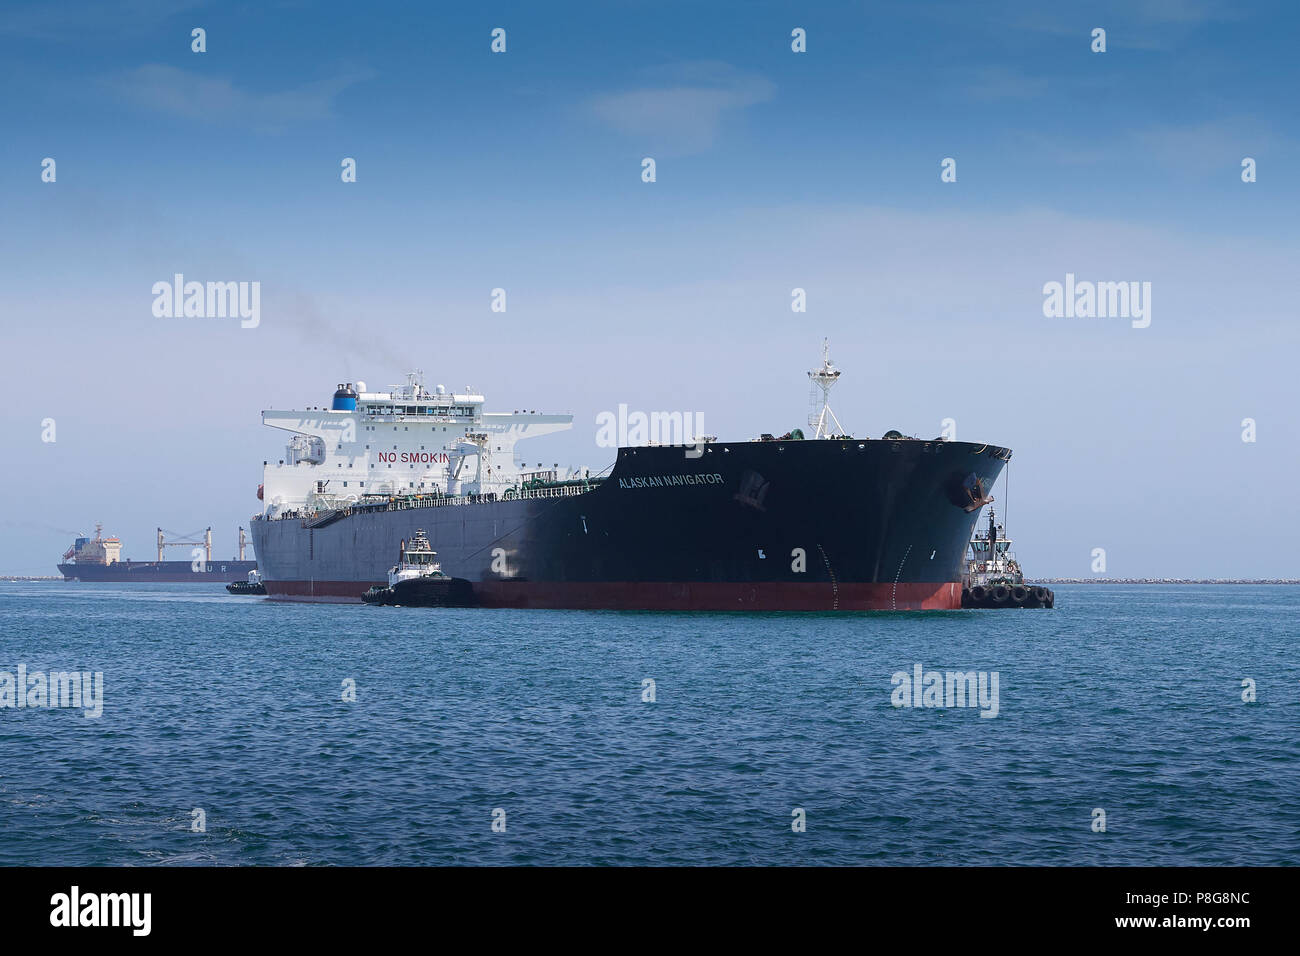 Super petroliere immagini e fotografie stock ad alta risoluzione - Alamy